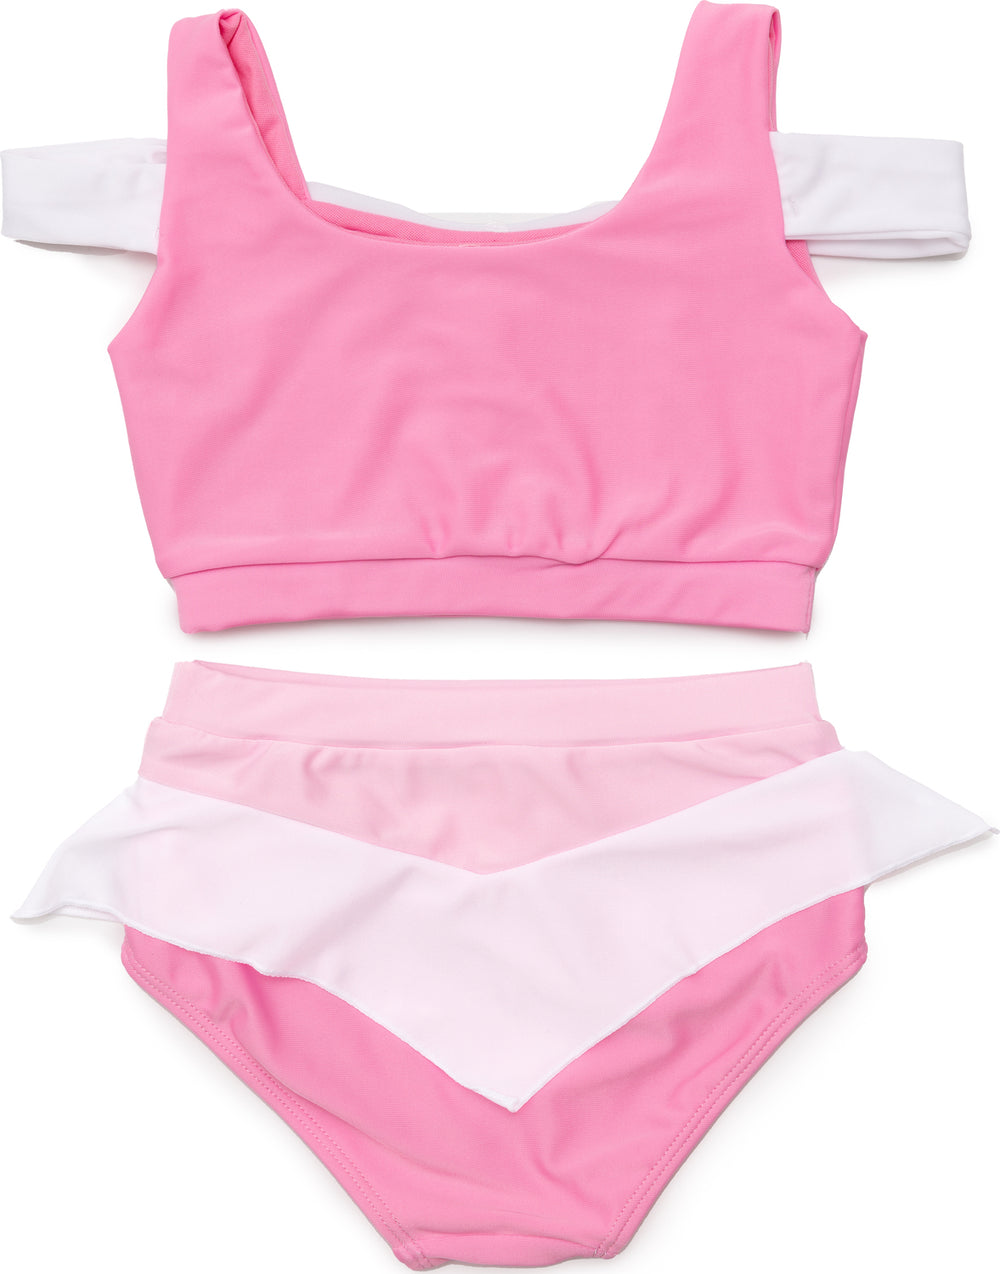 Sleeping Cutie Swim Suit, Two-Piece (Size 3-4)